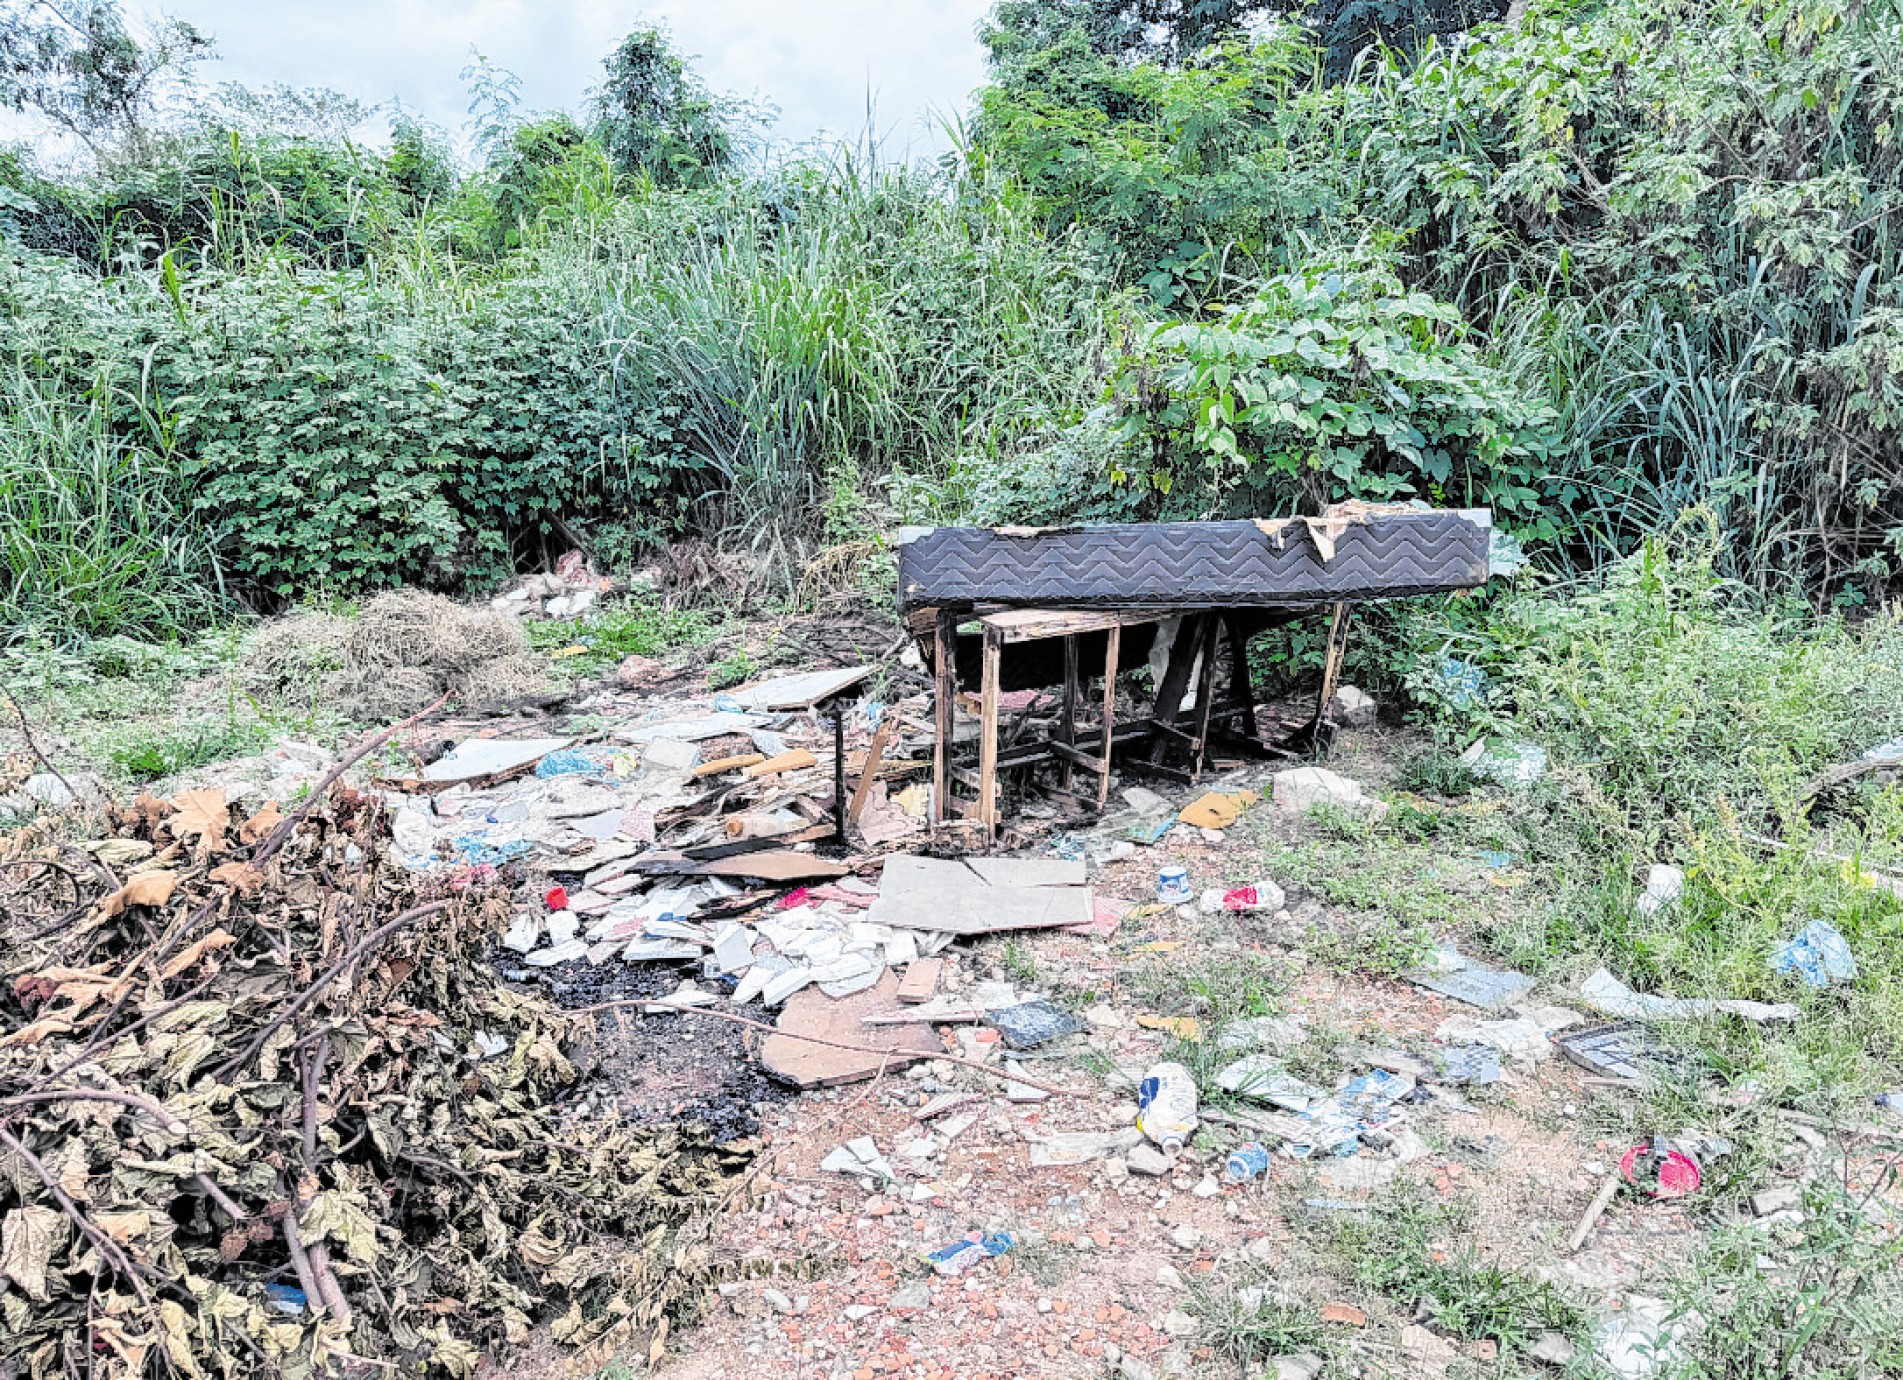 O local correto para descarte de resíduos inertes é nos ecopontos existentes em Sorocaba
